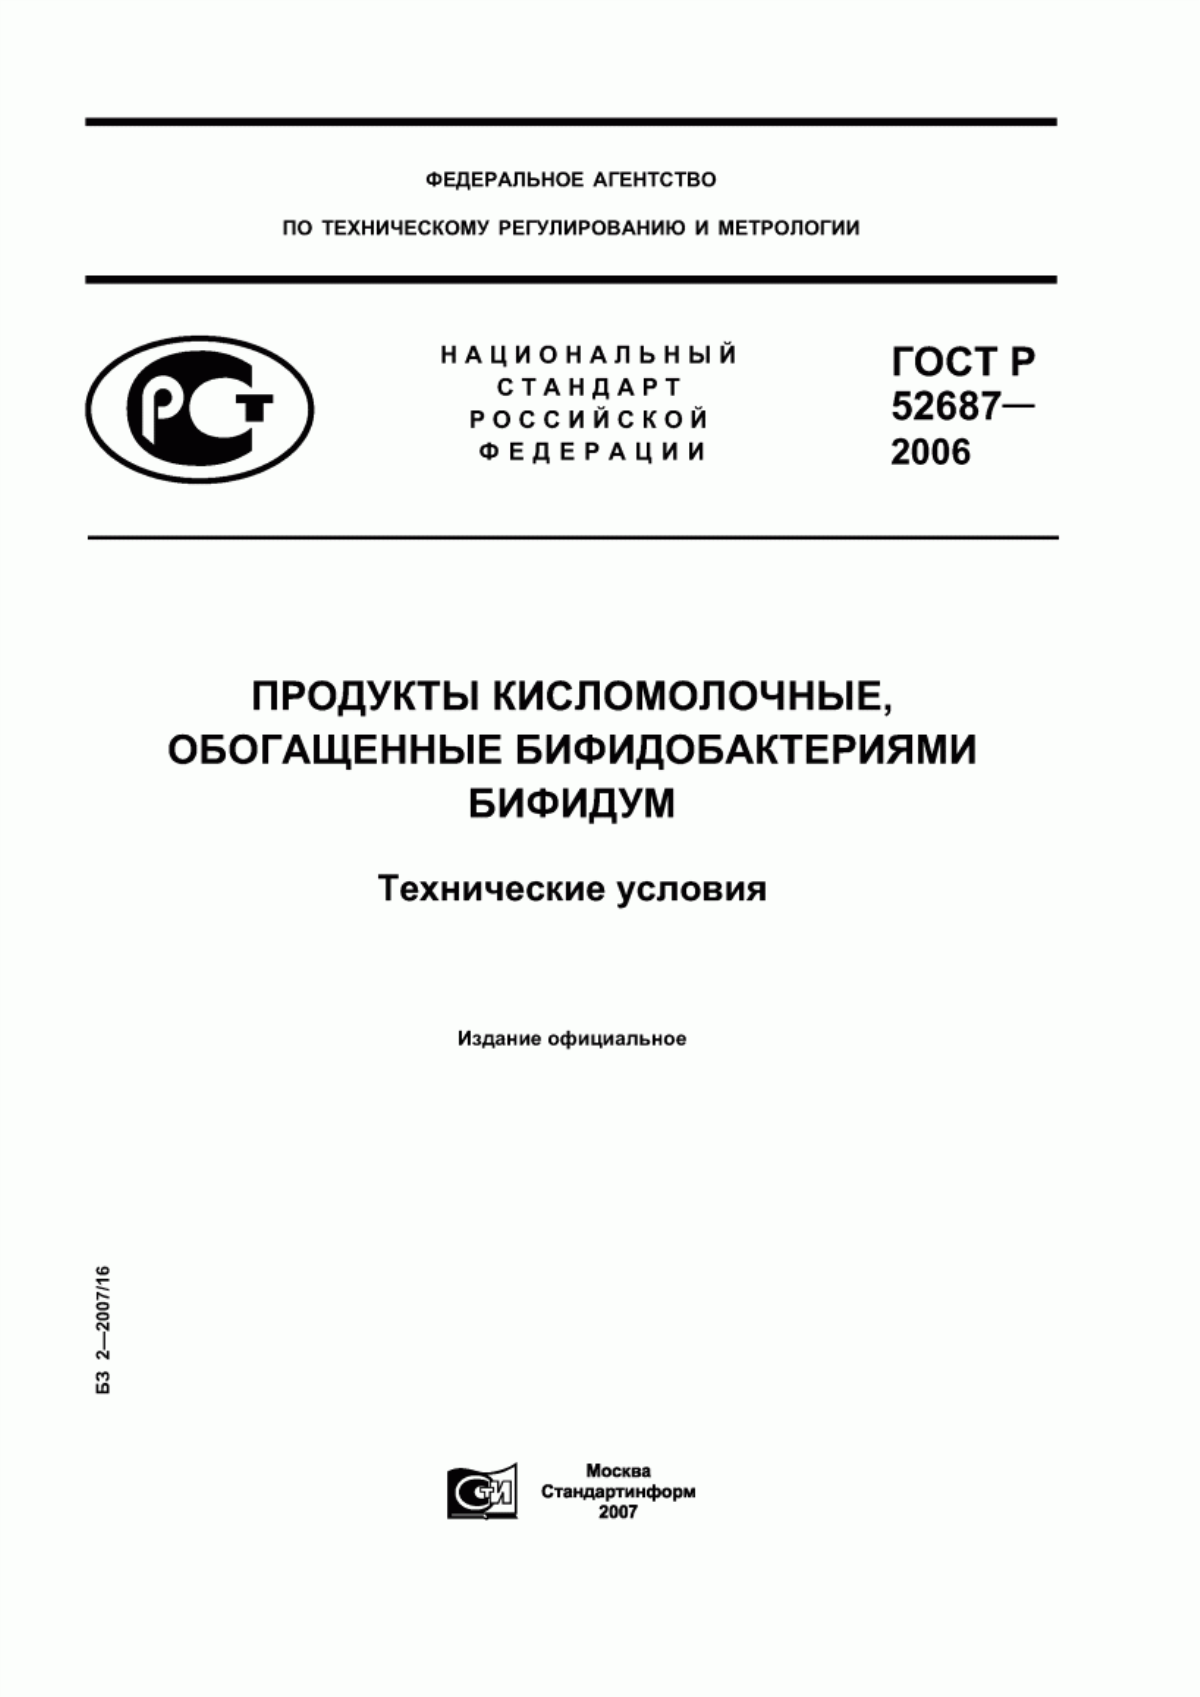 ГОСТ Р 52687-2006 Продукты кисломолочные, обогащенные бифидобактериями бифидум. Технические условия